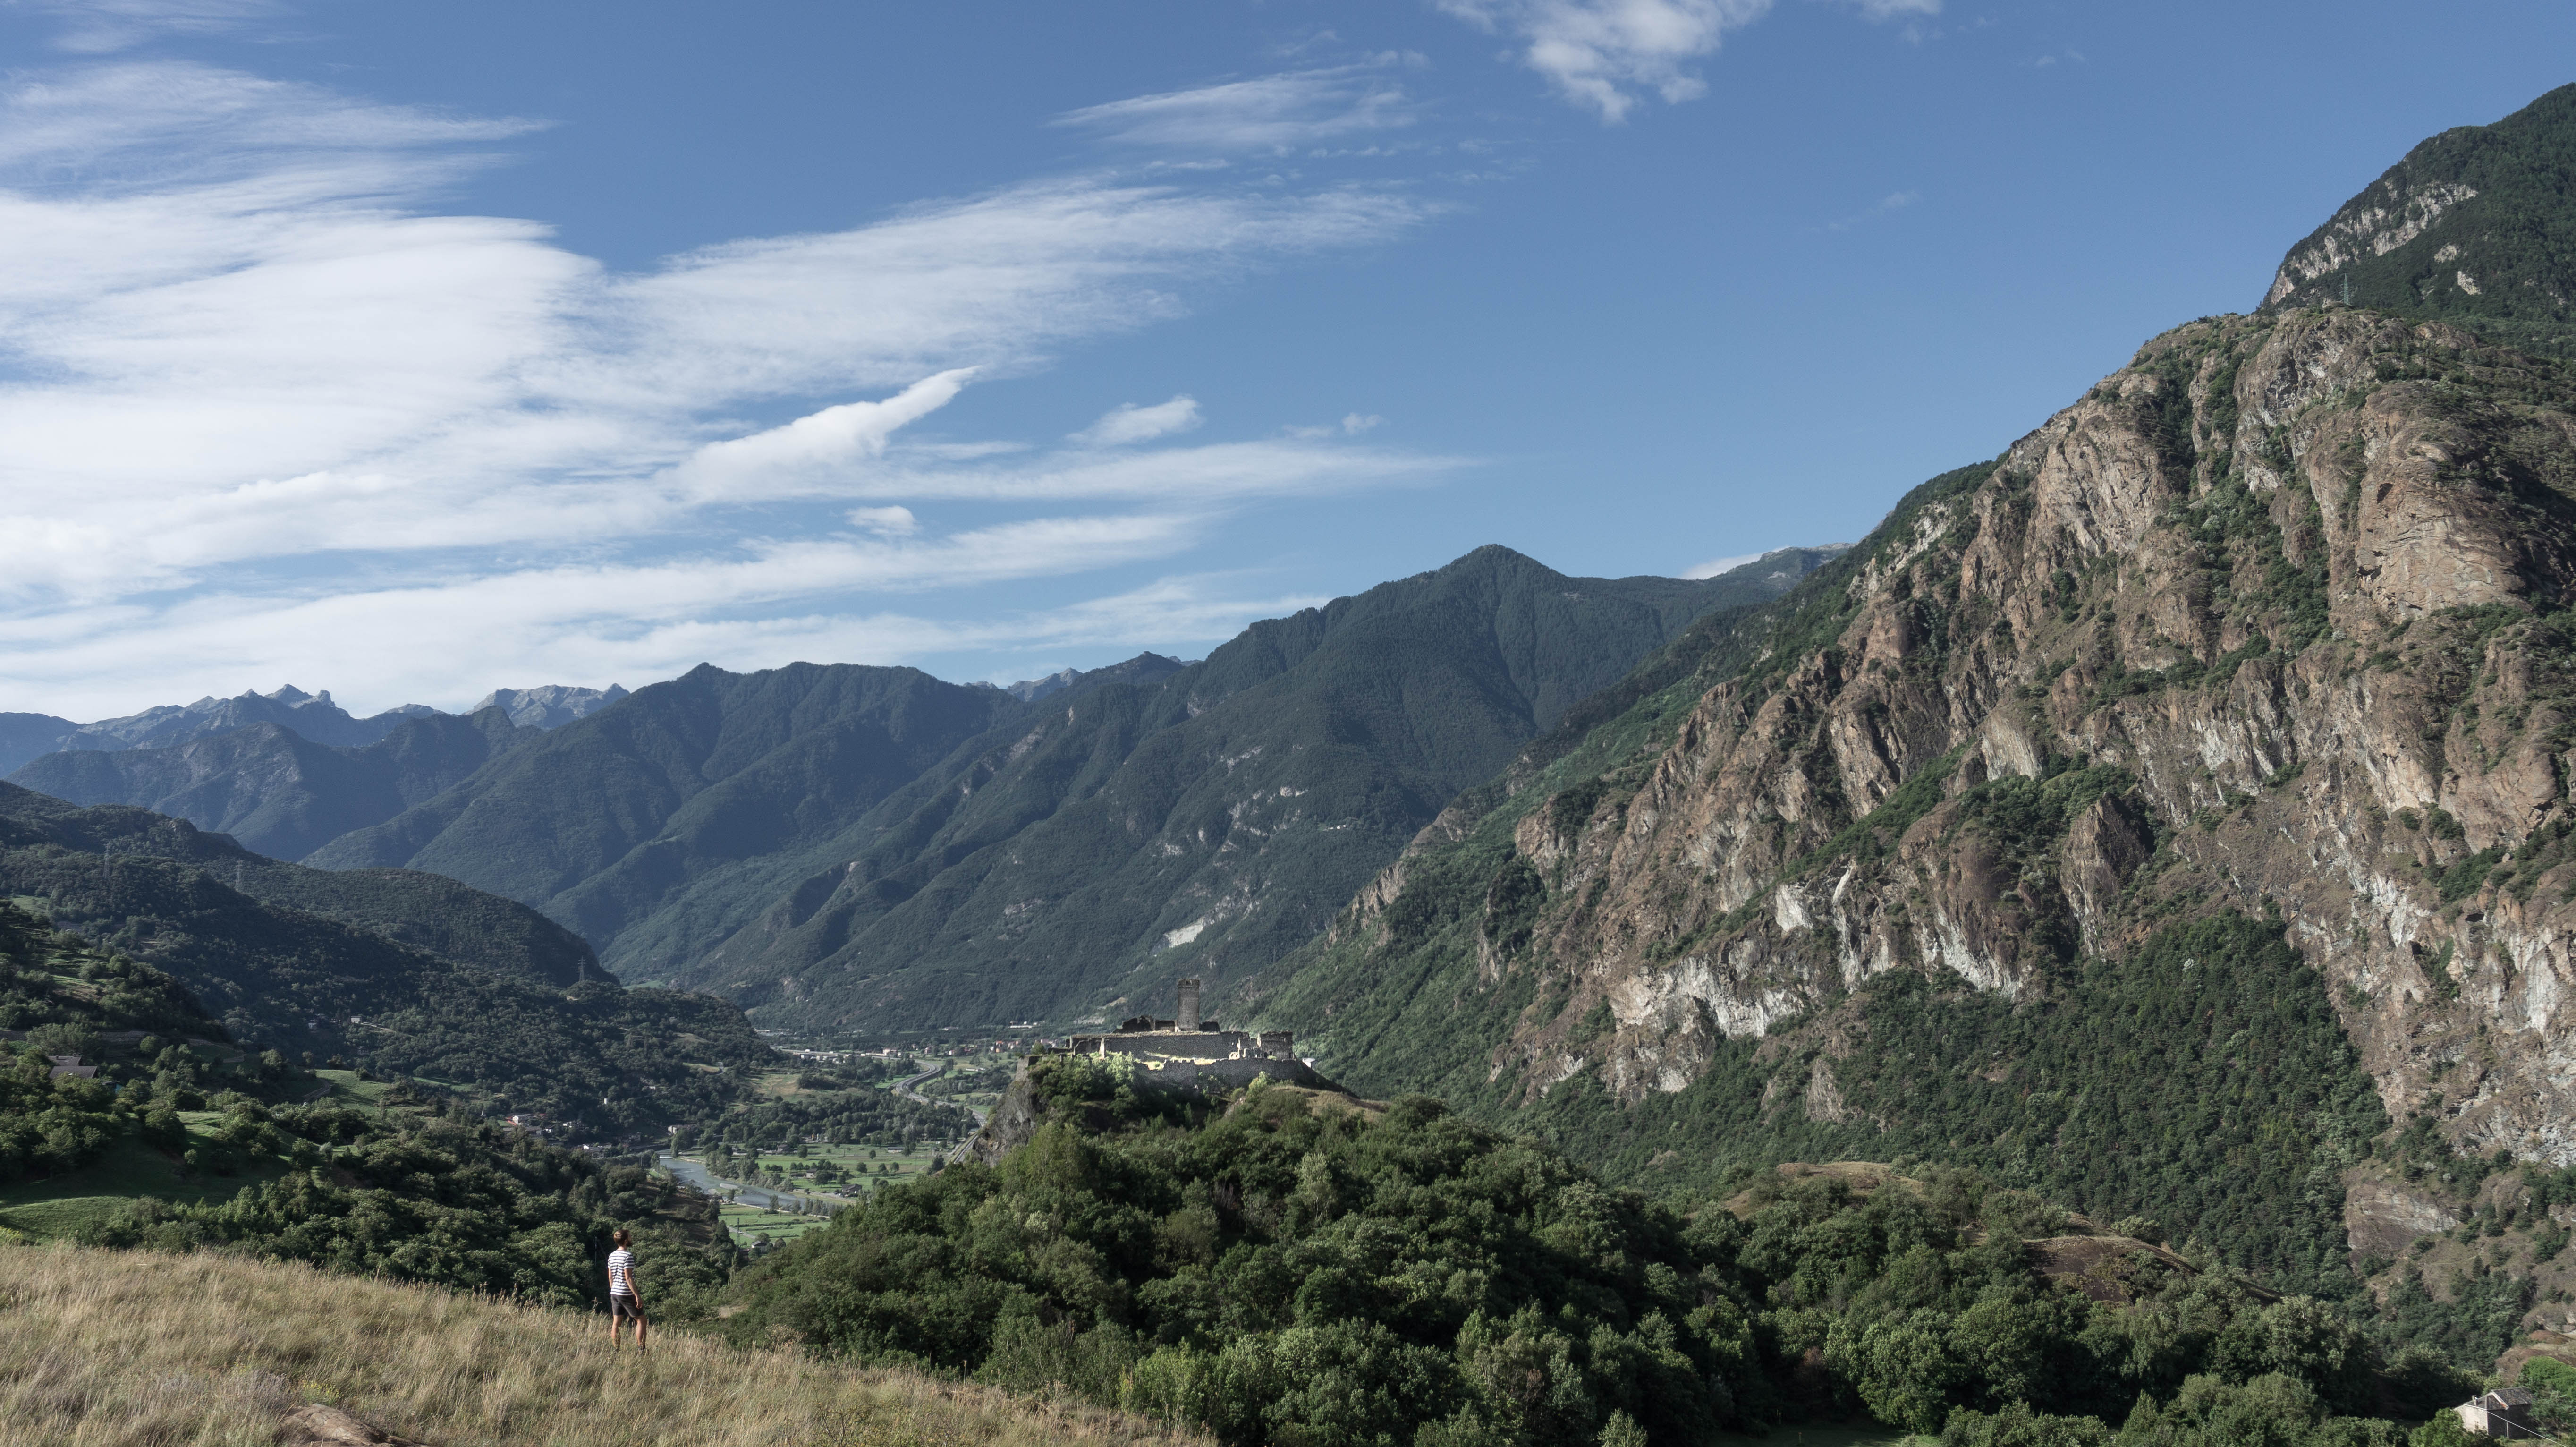 Aosta Via Francigena